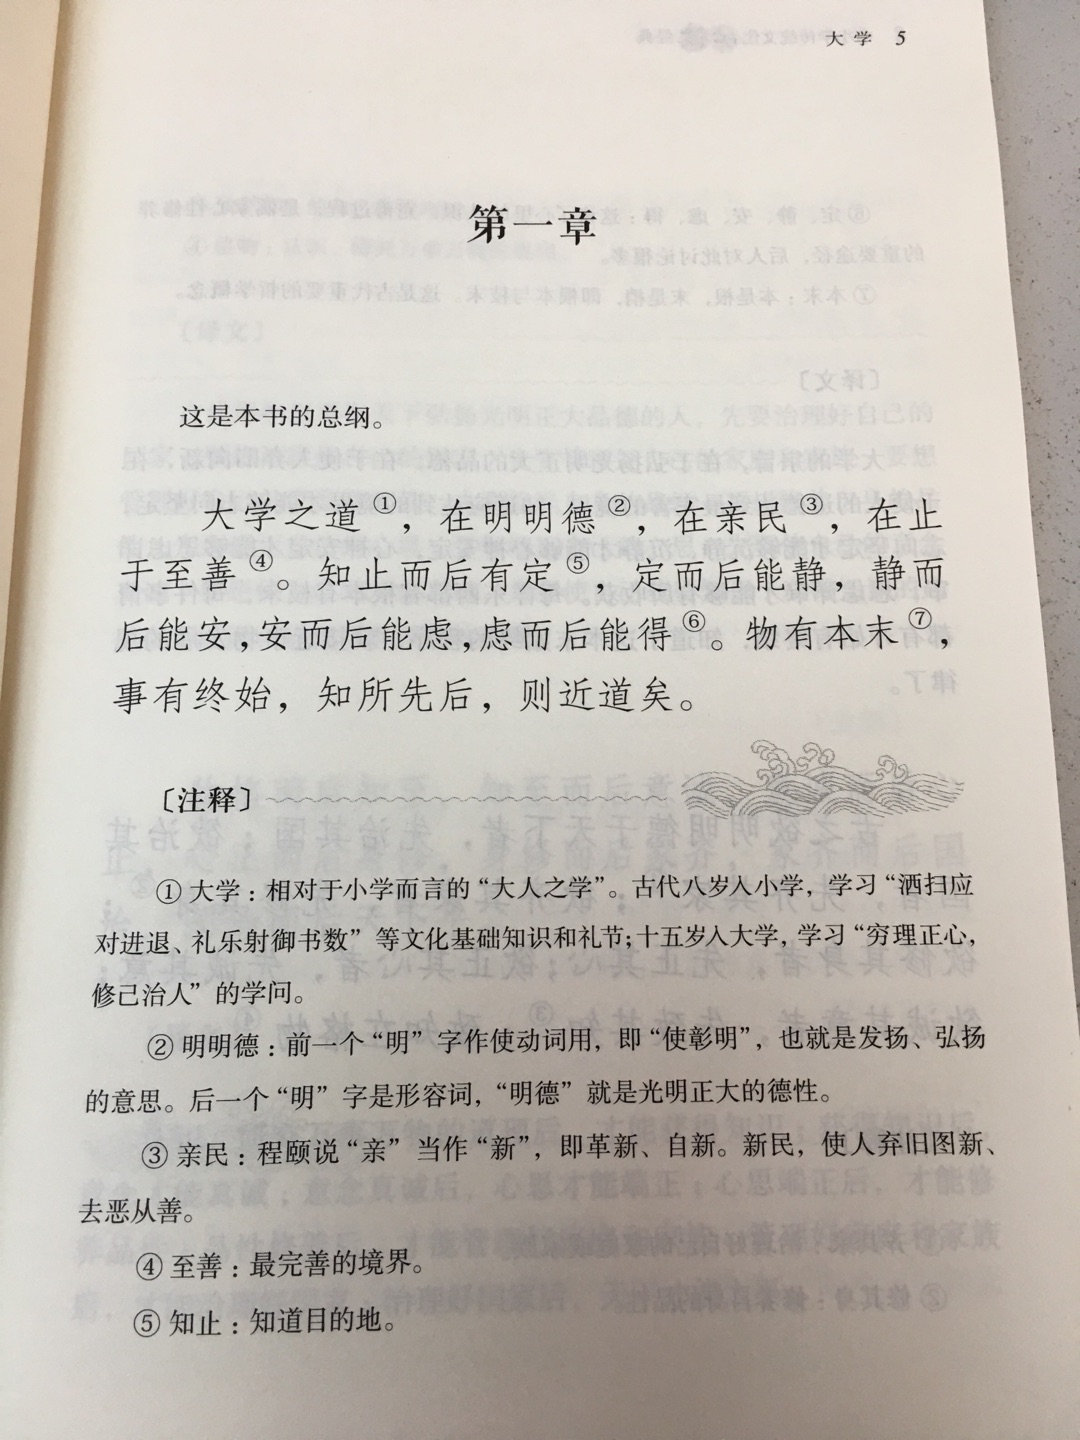 中华书局这套书基本都买了，精选经典作品。